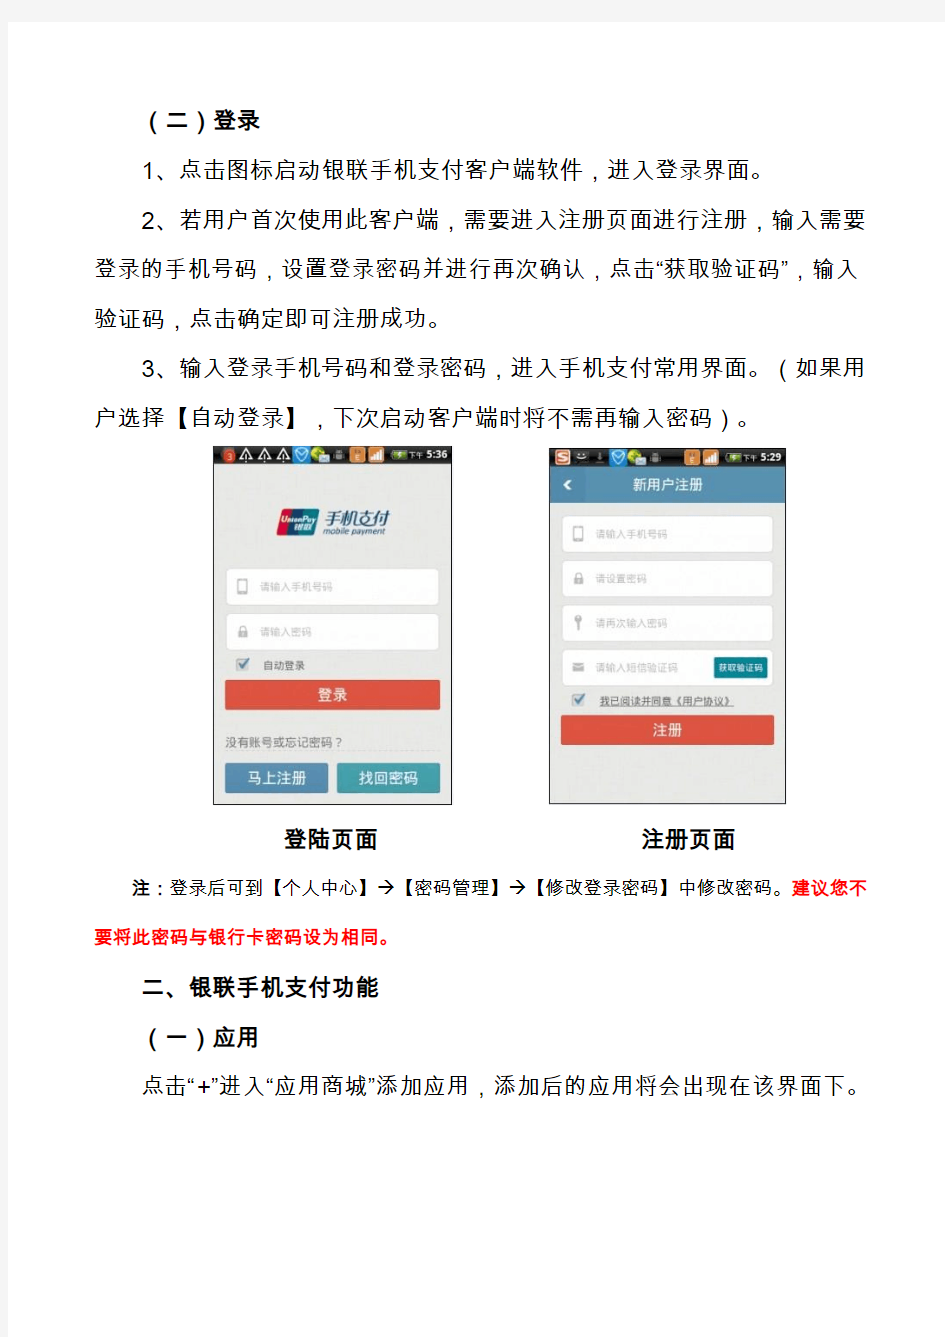 银联手机支付用户手册-中国银联